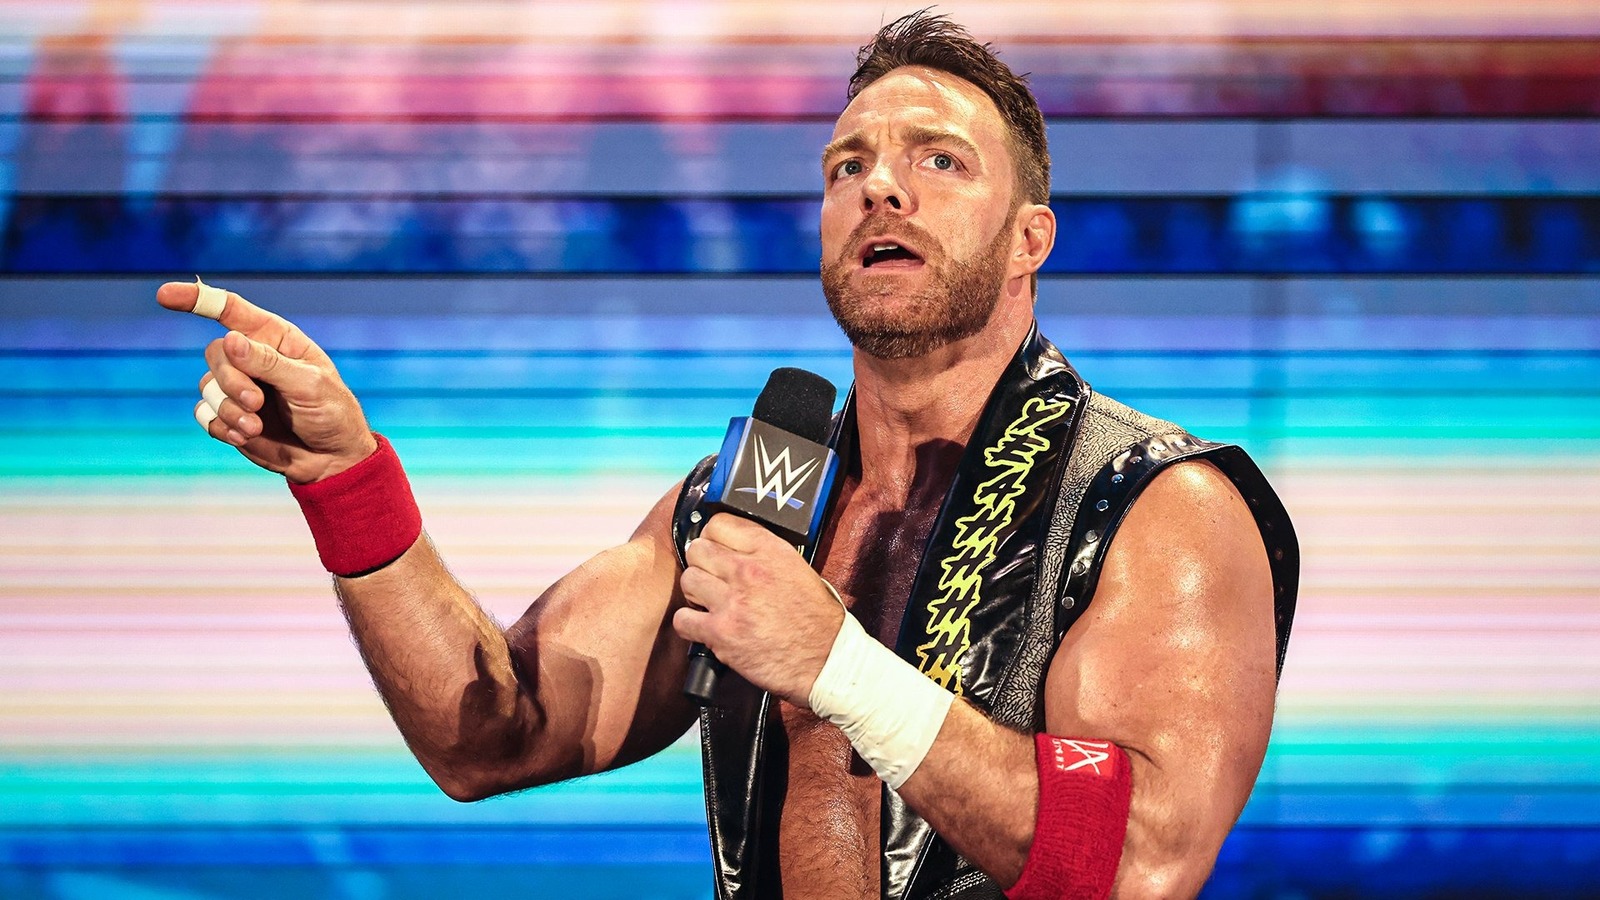 La estrella de la WWE LA Knight responde a problemas de merchandising y retrasos